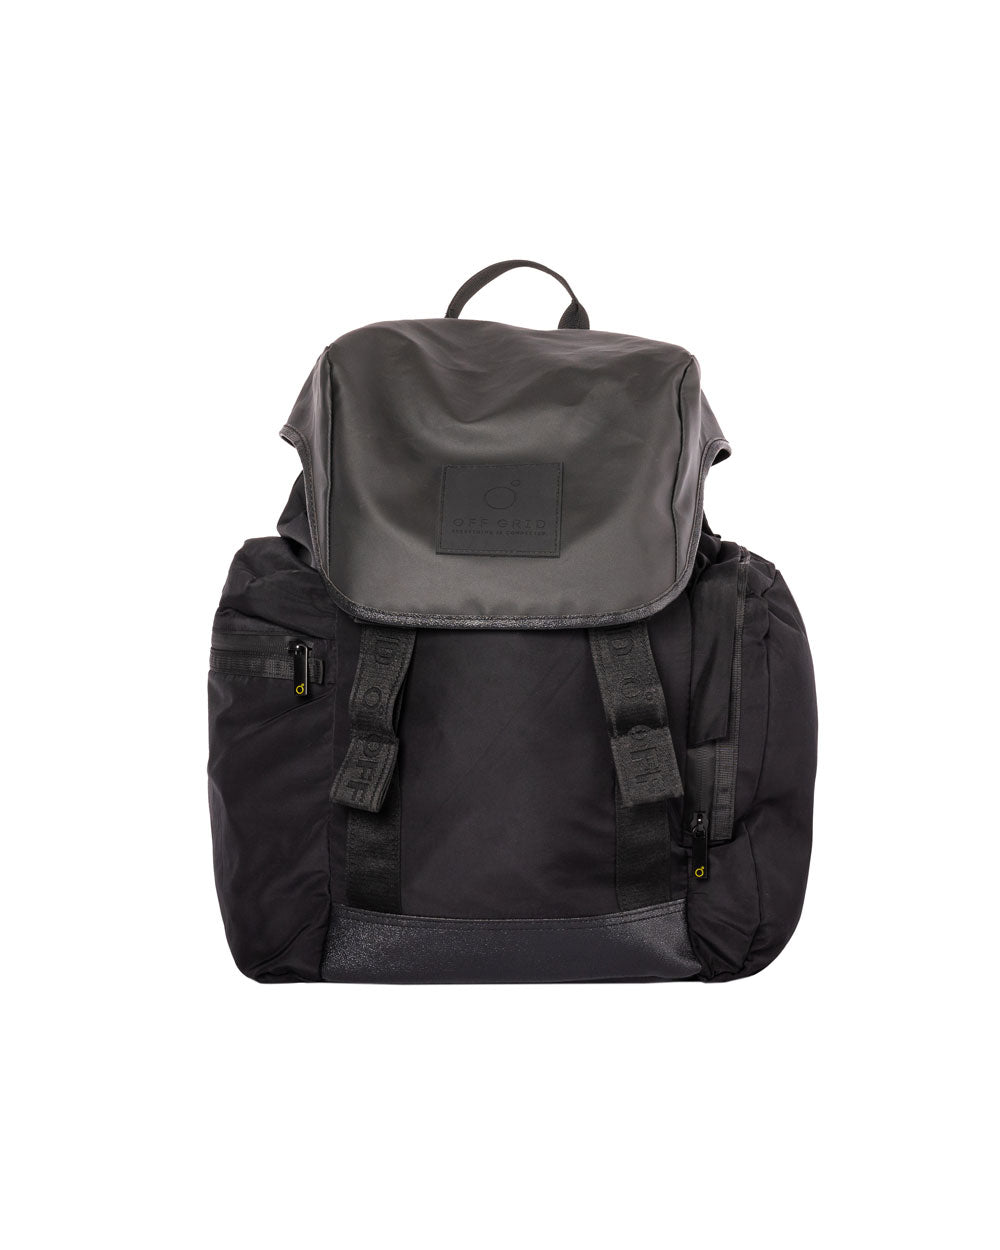 Vision backpack